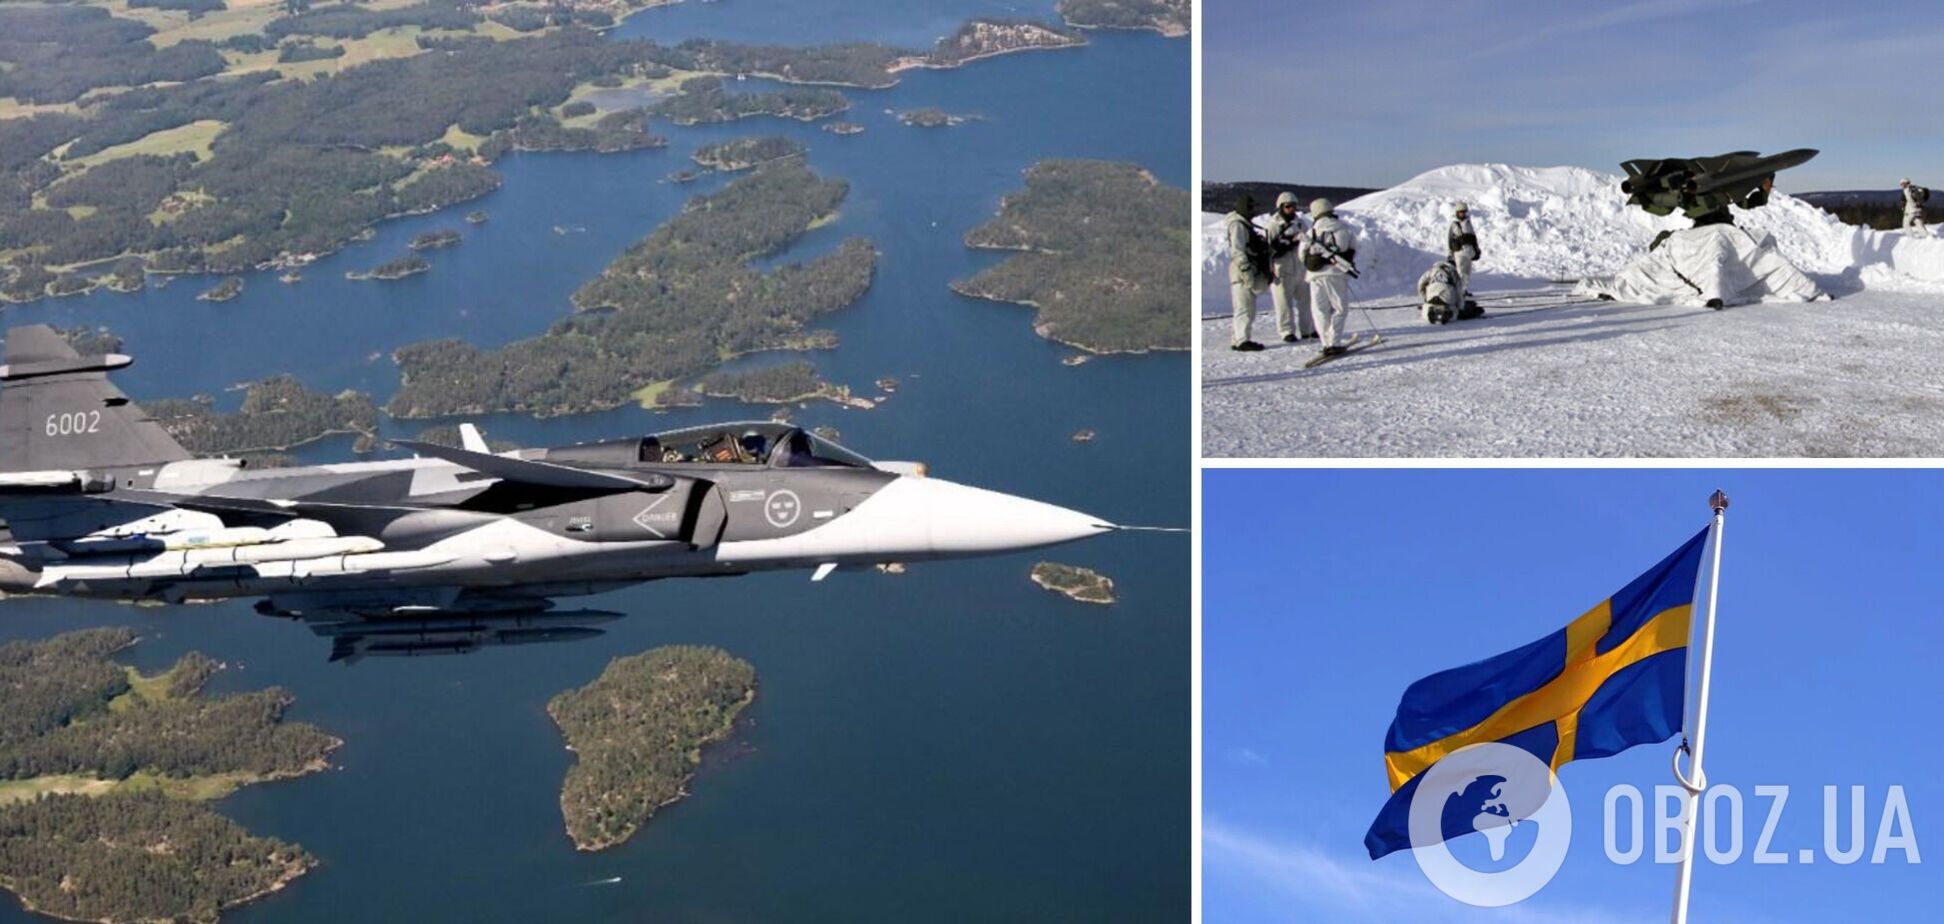 Стокгольм не планирует предоставлять Украине истребители Gripen, но поможет с ПВО, – министр обороны Швеции